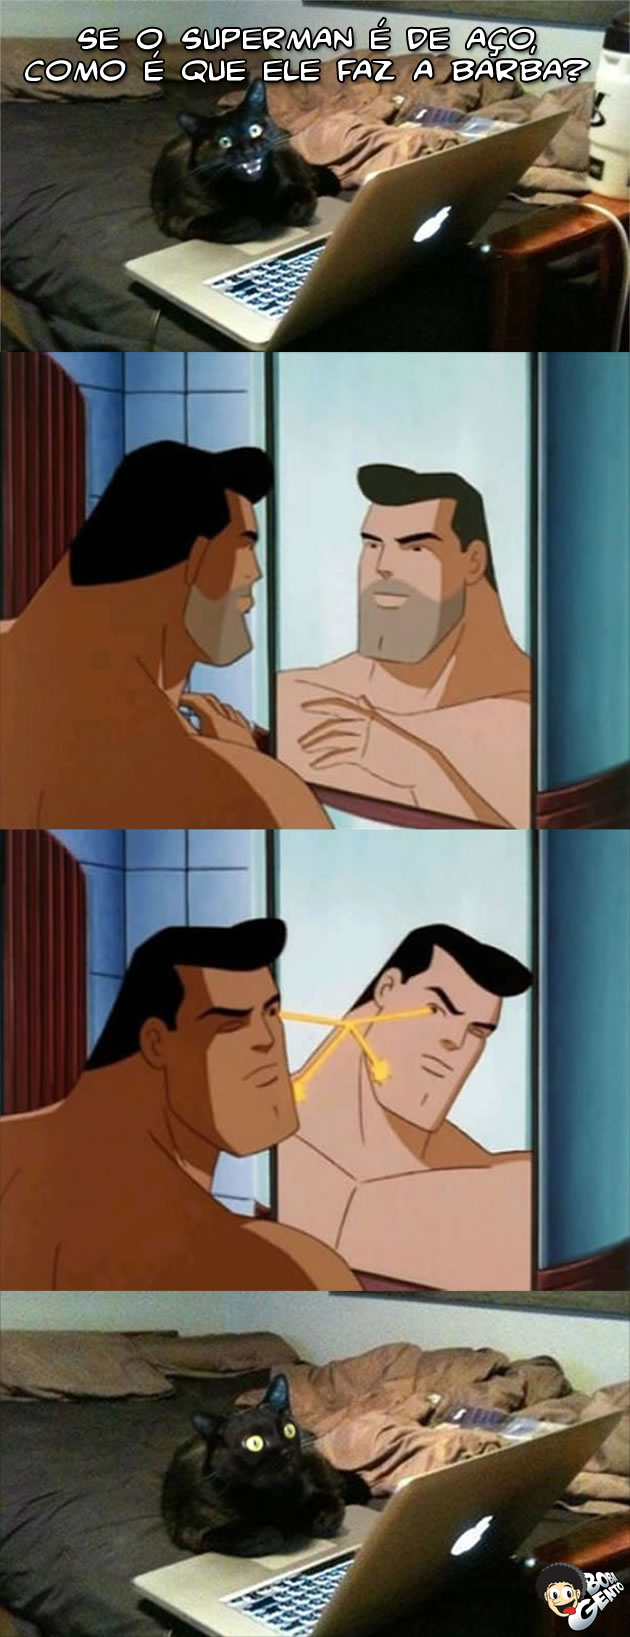 Superman fazendo a barba Como o Superman faz a barba?